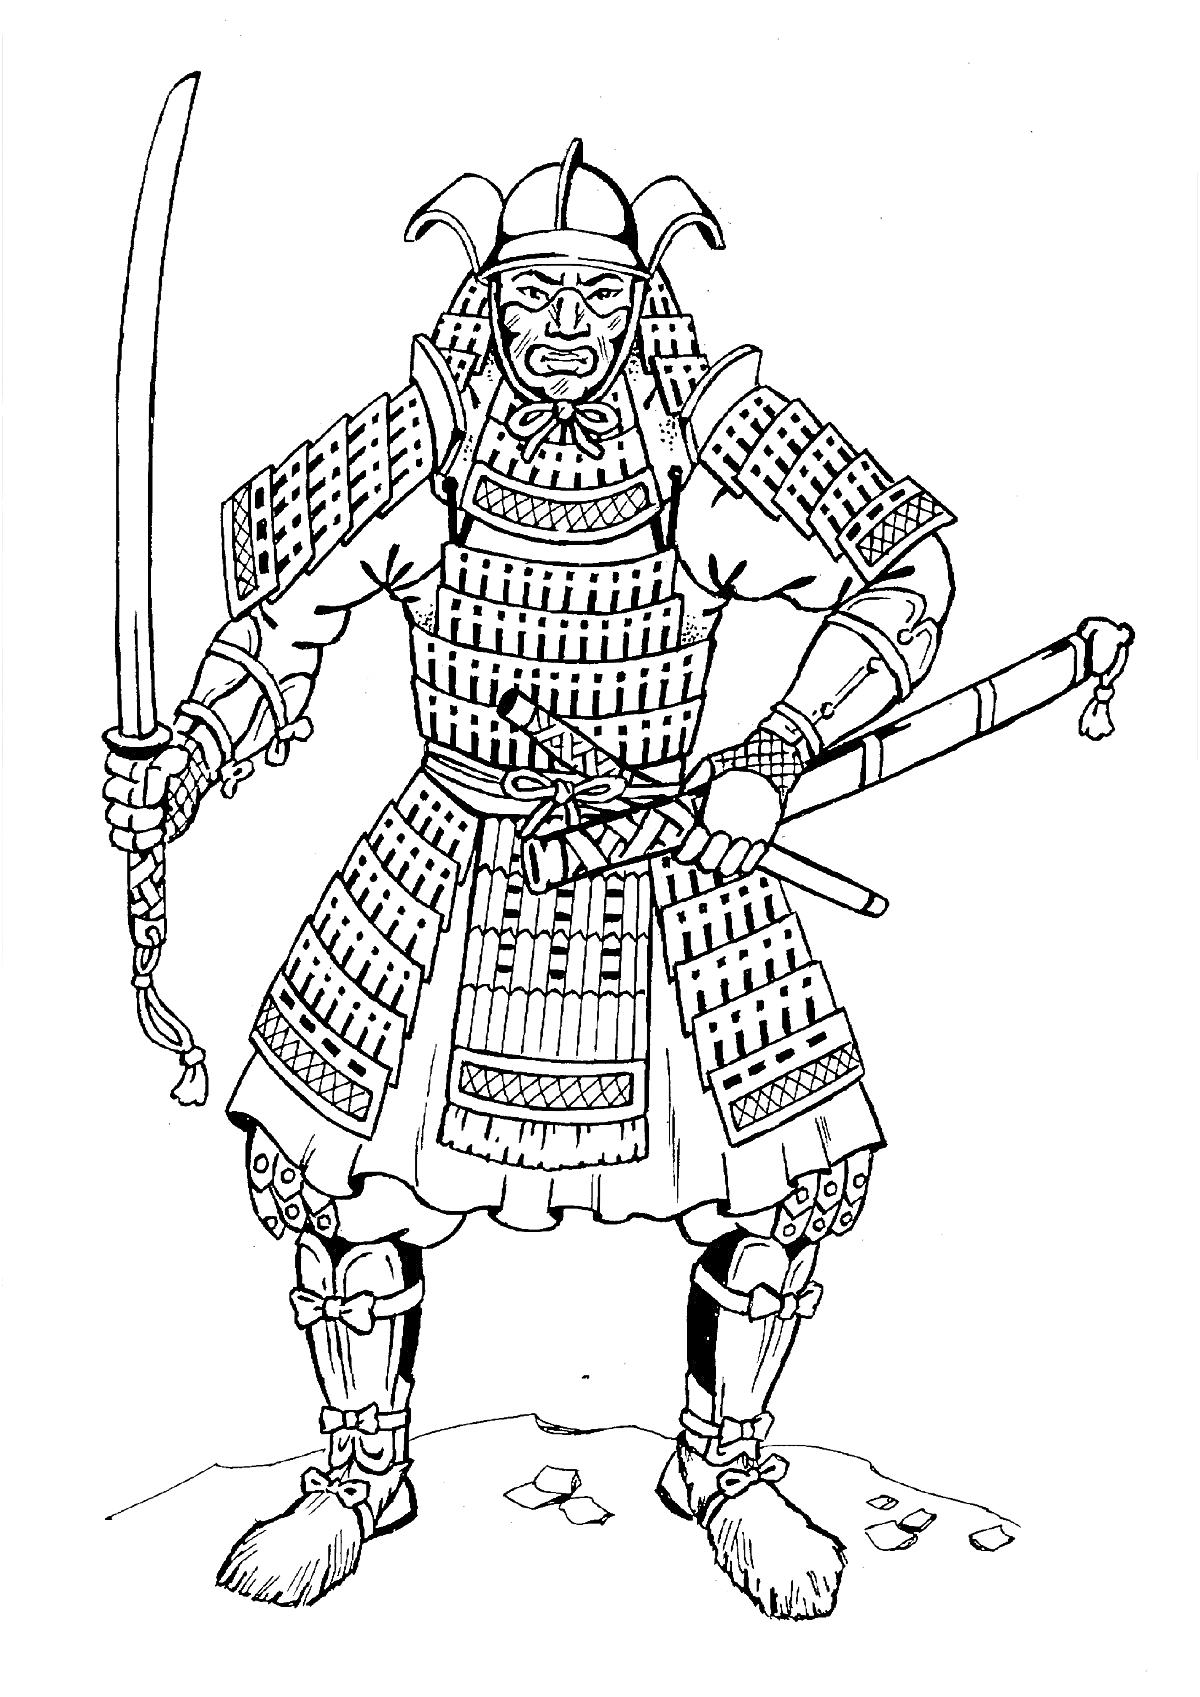 Самурай в полном доспехе с мечом и ножнами на фоне камней